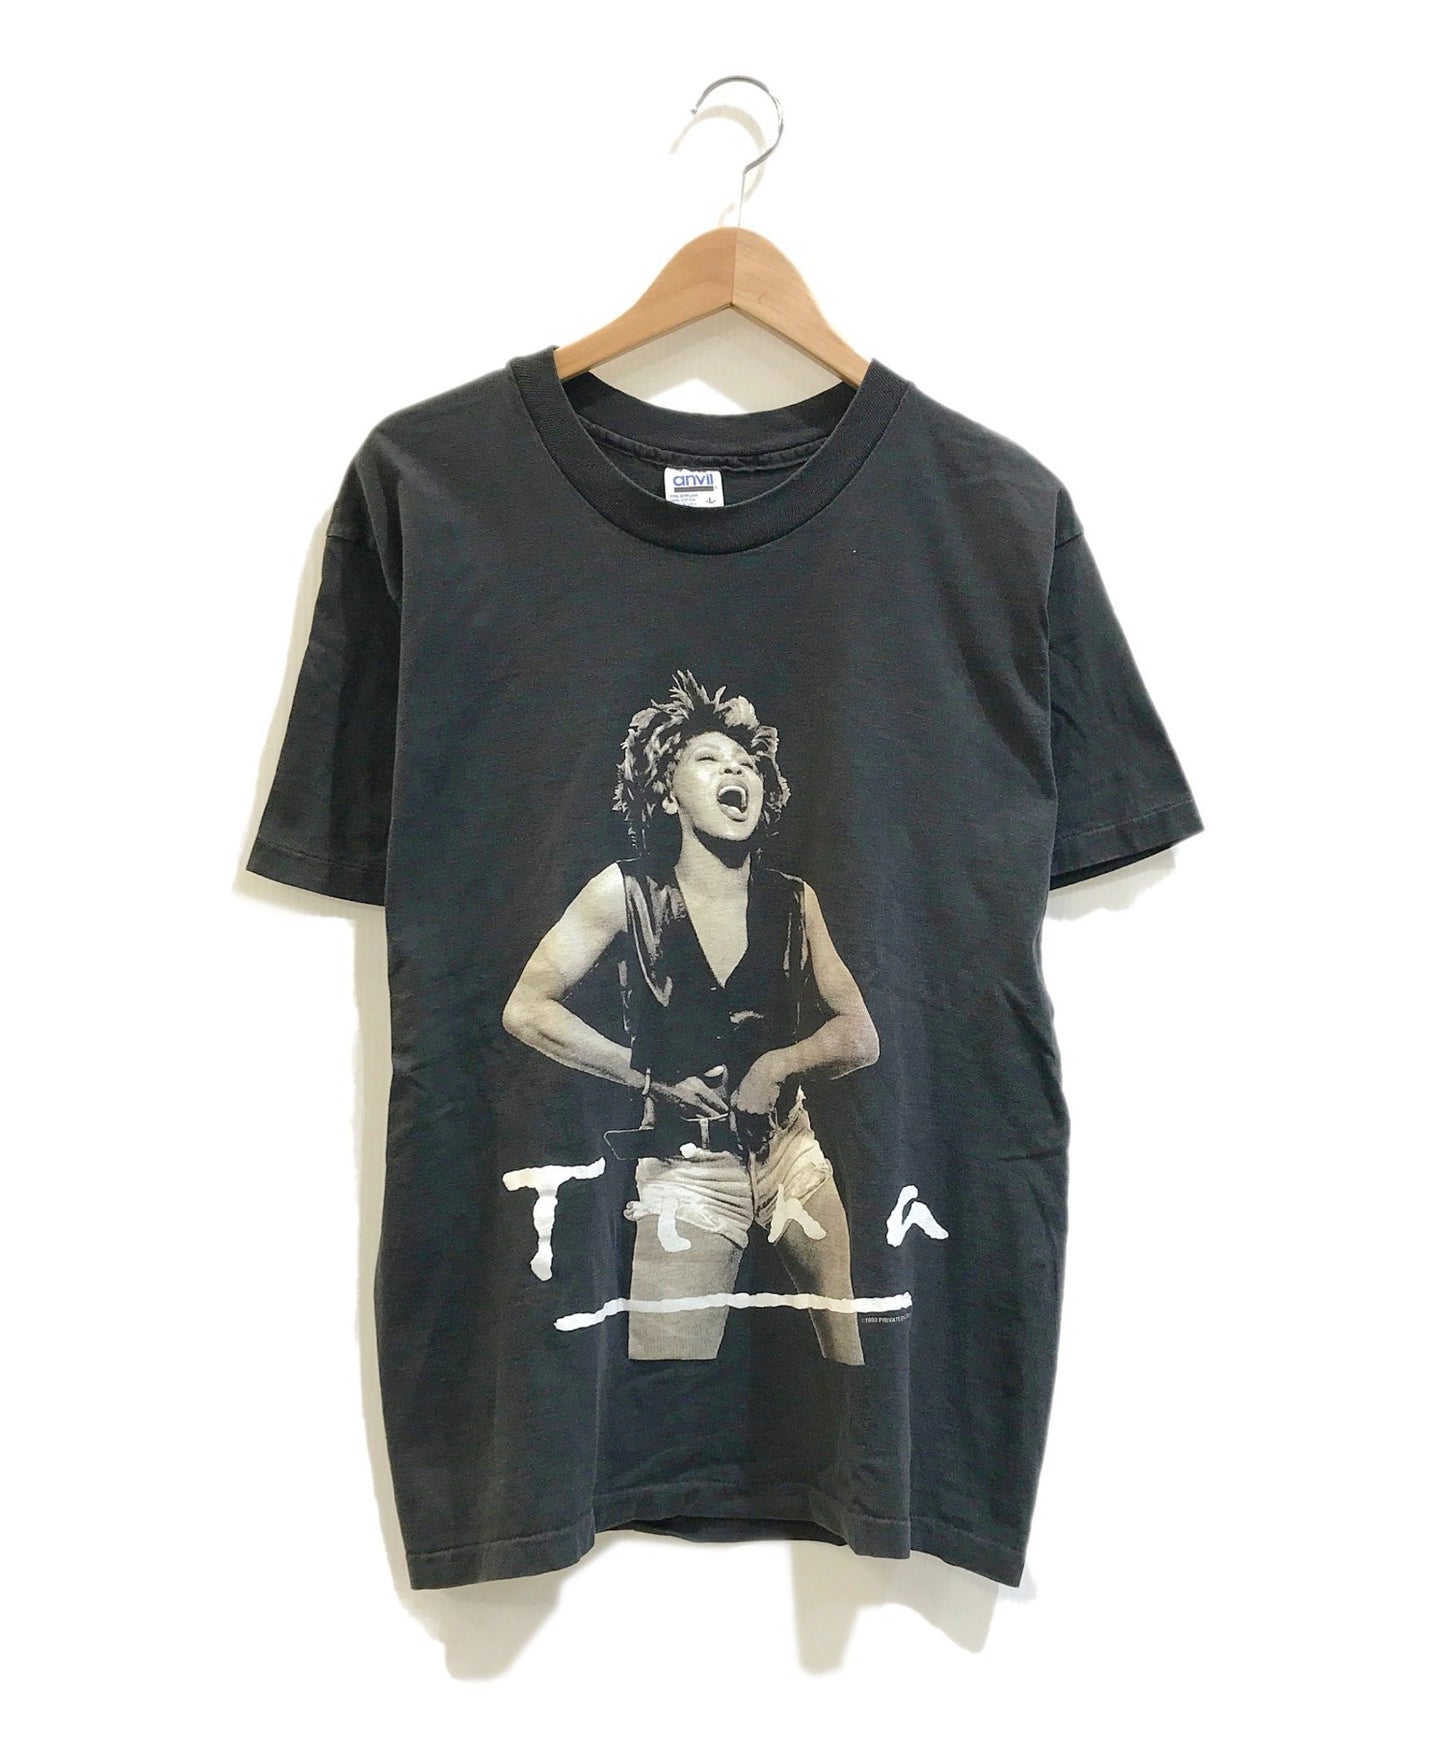 [เสื้อผ้าวินเทจ] เสื้อยืด Tina Turner ศิลปิน 90